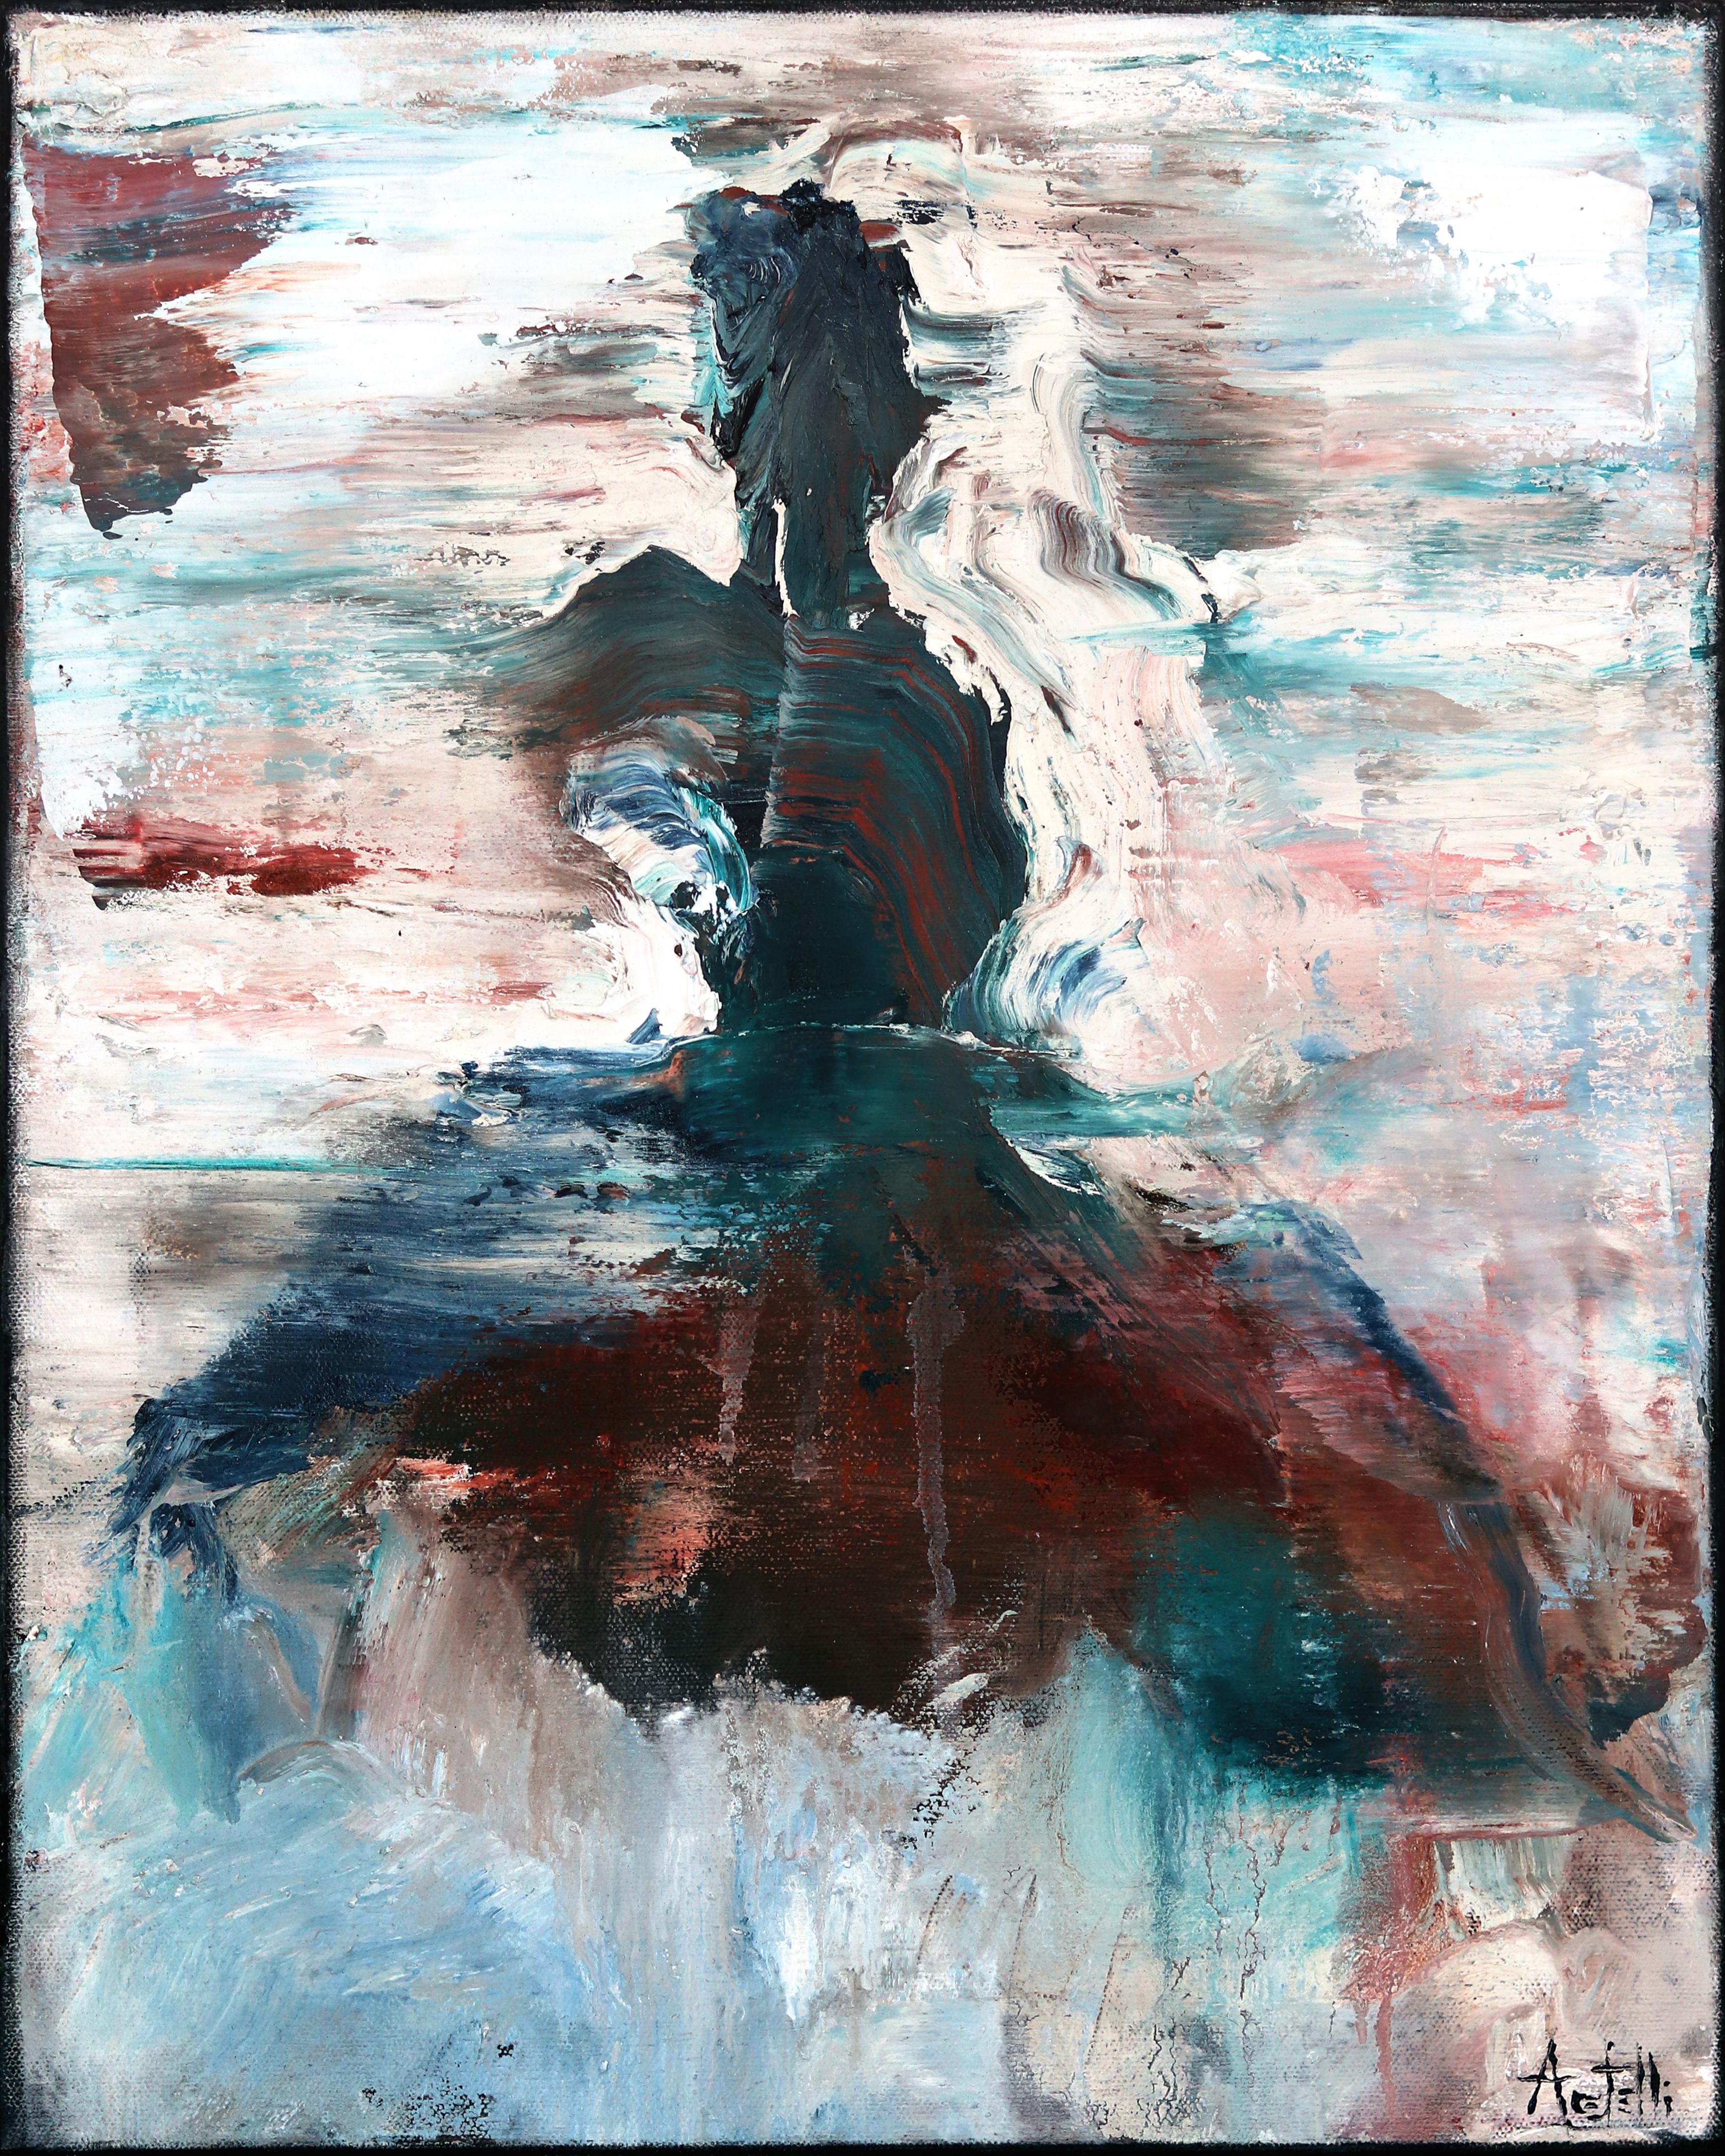 Portrait Painting Mark Acetelli - La danse de Paloma - Huile sur toile - Peinture figurative abstraite de danseuse